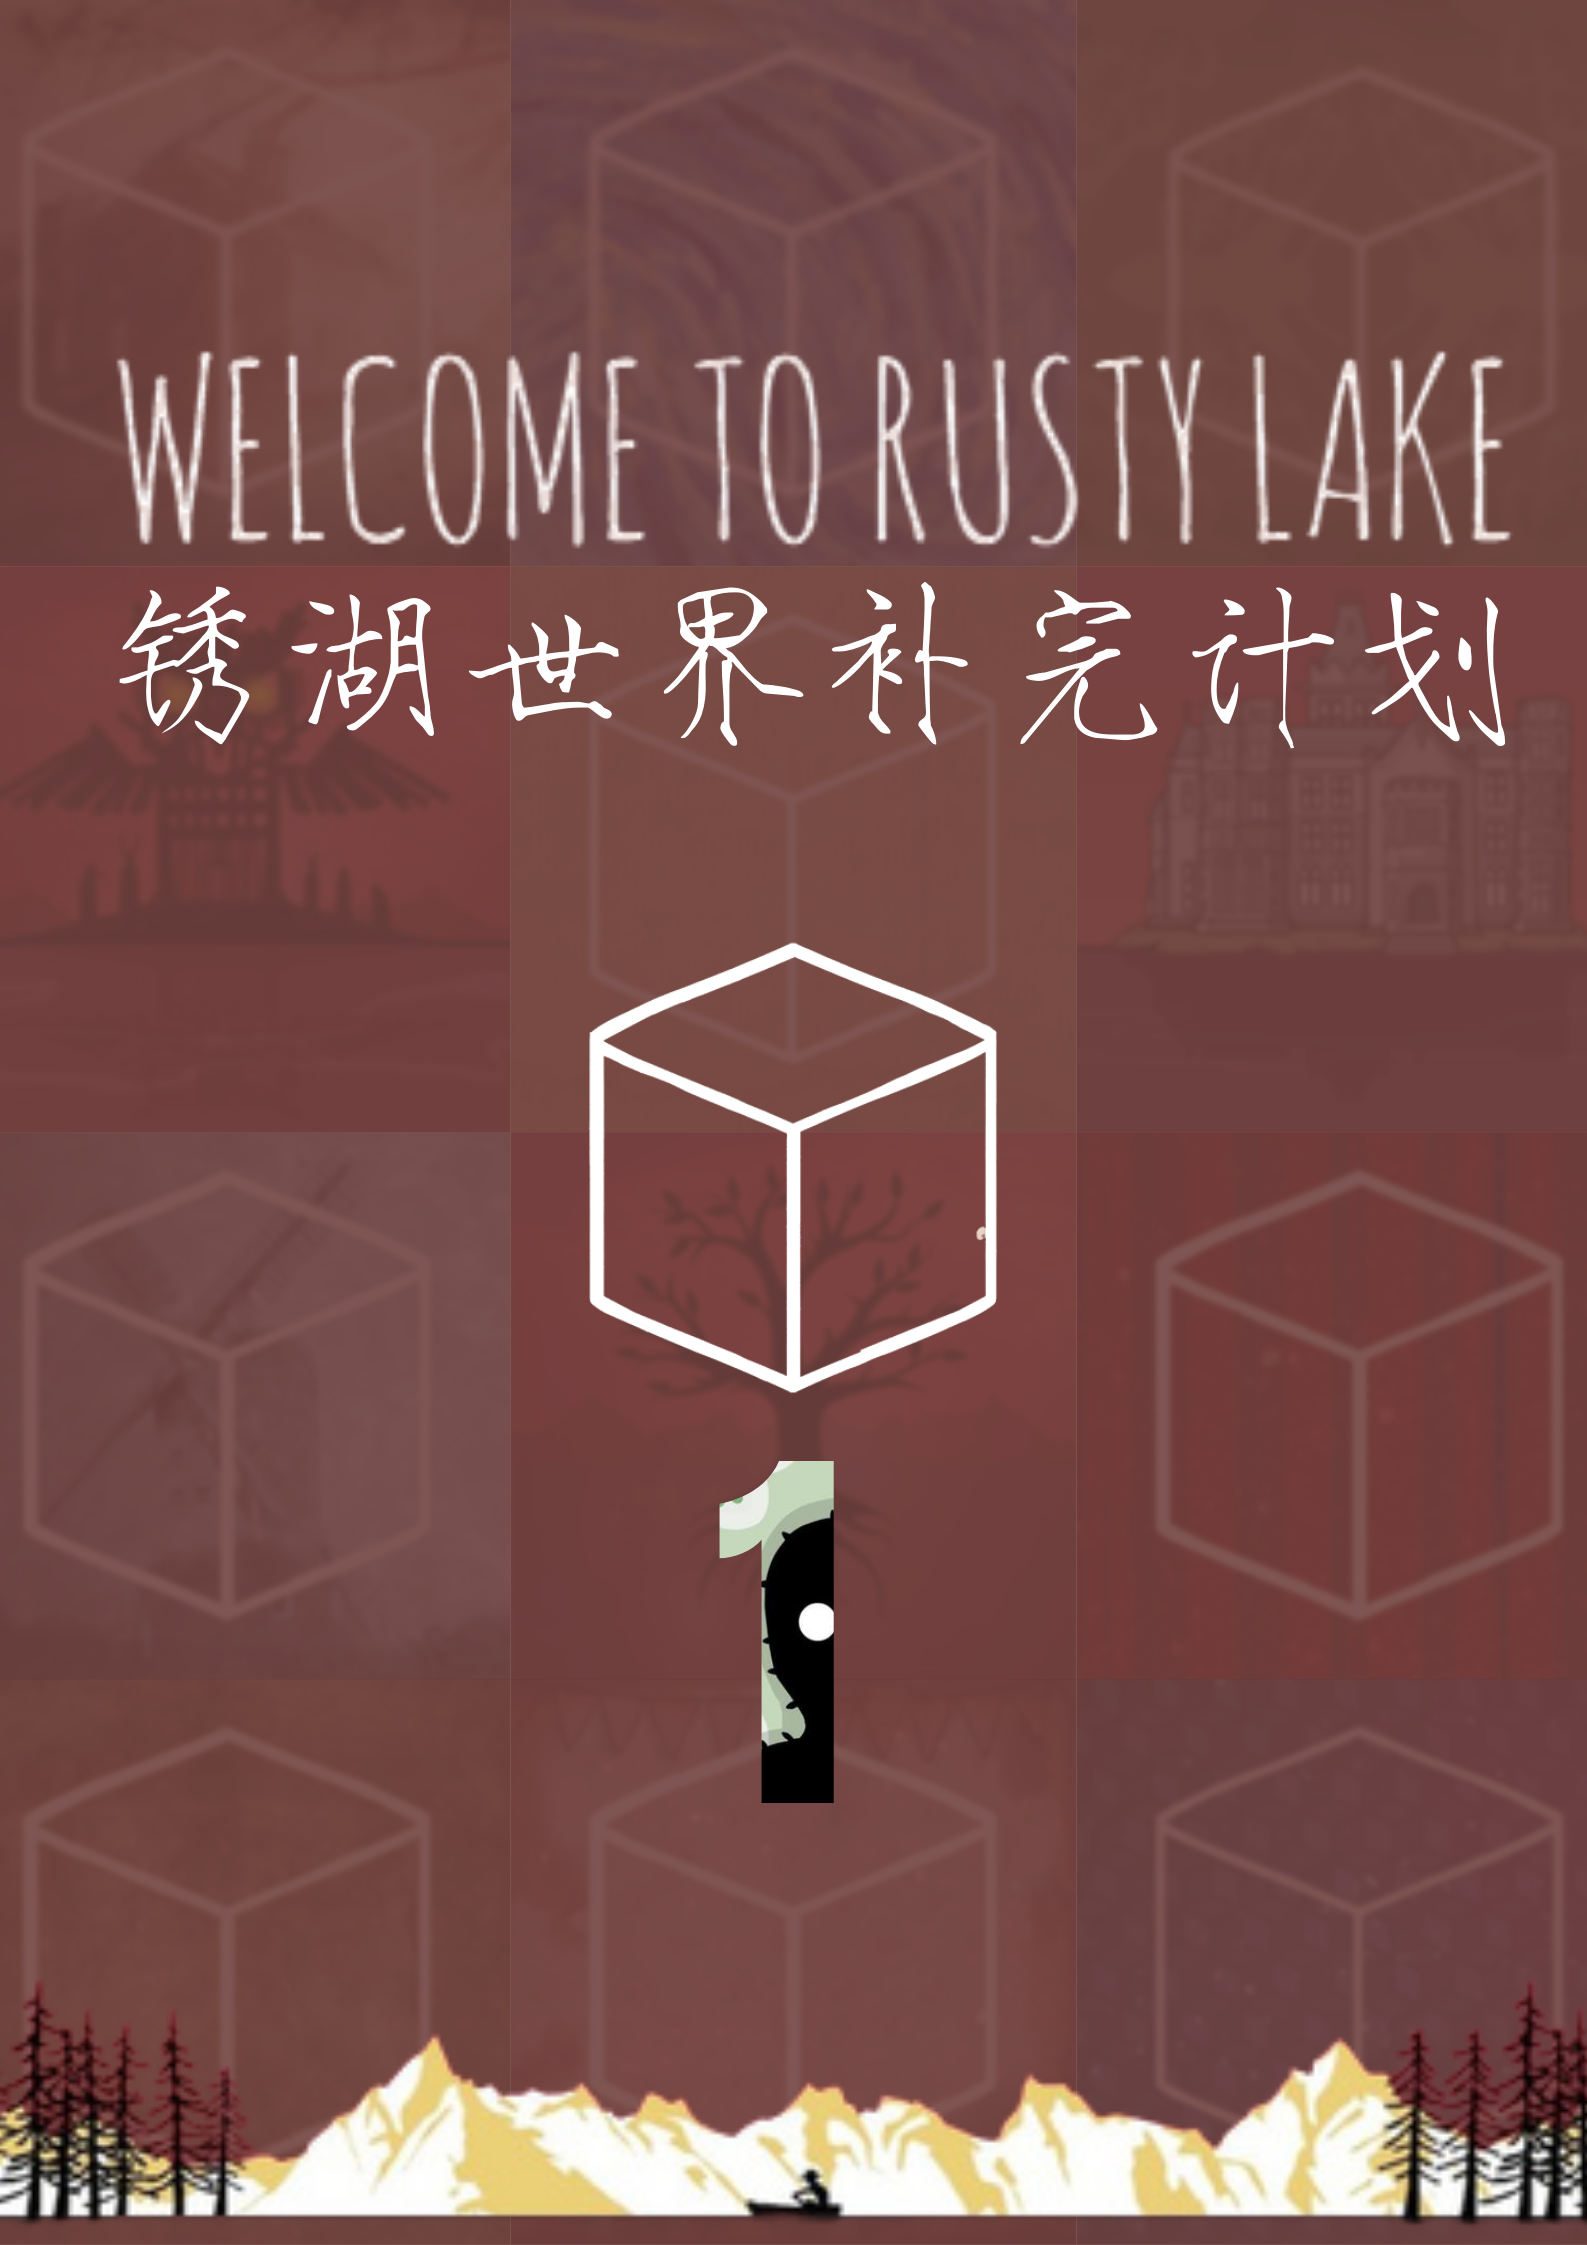 【锈湖世界补完计划01】
▮游戏介绍▮
锈湖系列（英语：Rusty Lake），是位于荷兰阿姆斯特丹的同名独立游戏工作坊锈湖工作室制作并发行的密室逃脱类系列游戏。
其开发者称，其创作“锈湖”这一虚构世界的灵感来源于大卫·林奇和马克·弗罗斯特（英语：Mark Frost）的电视剧《双峰镇》。
其每款游戏在故事情节和人物网络中相互联系穿插，每一部分都揭示了更多关于“锈湖世界”的内容。
2013年8月1